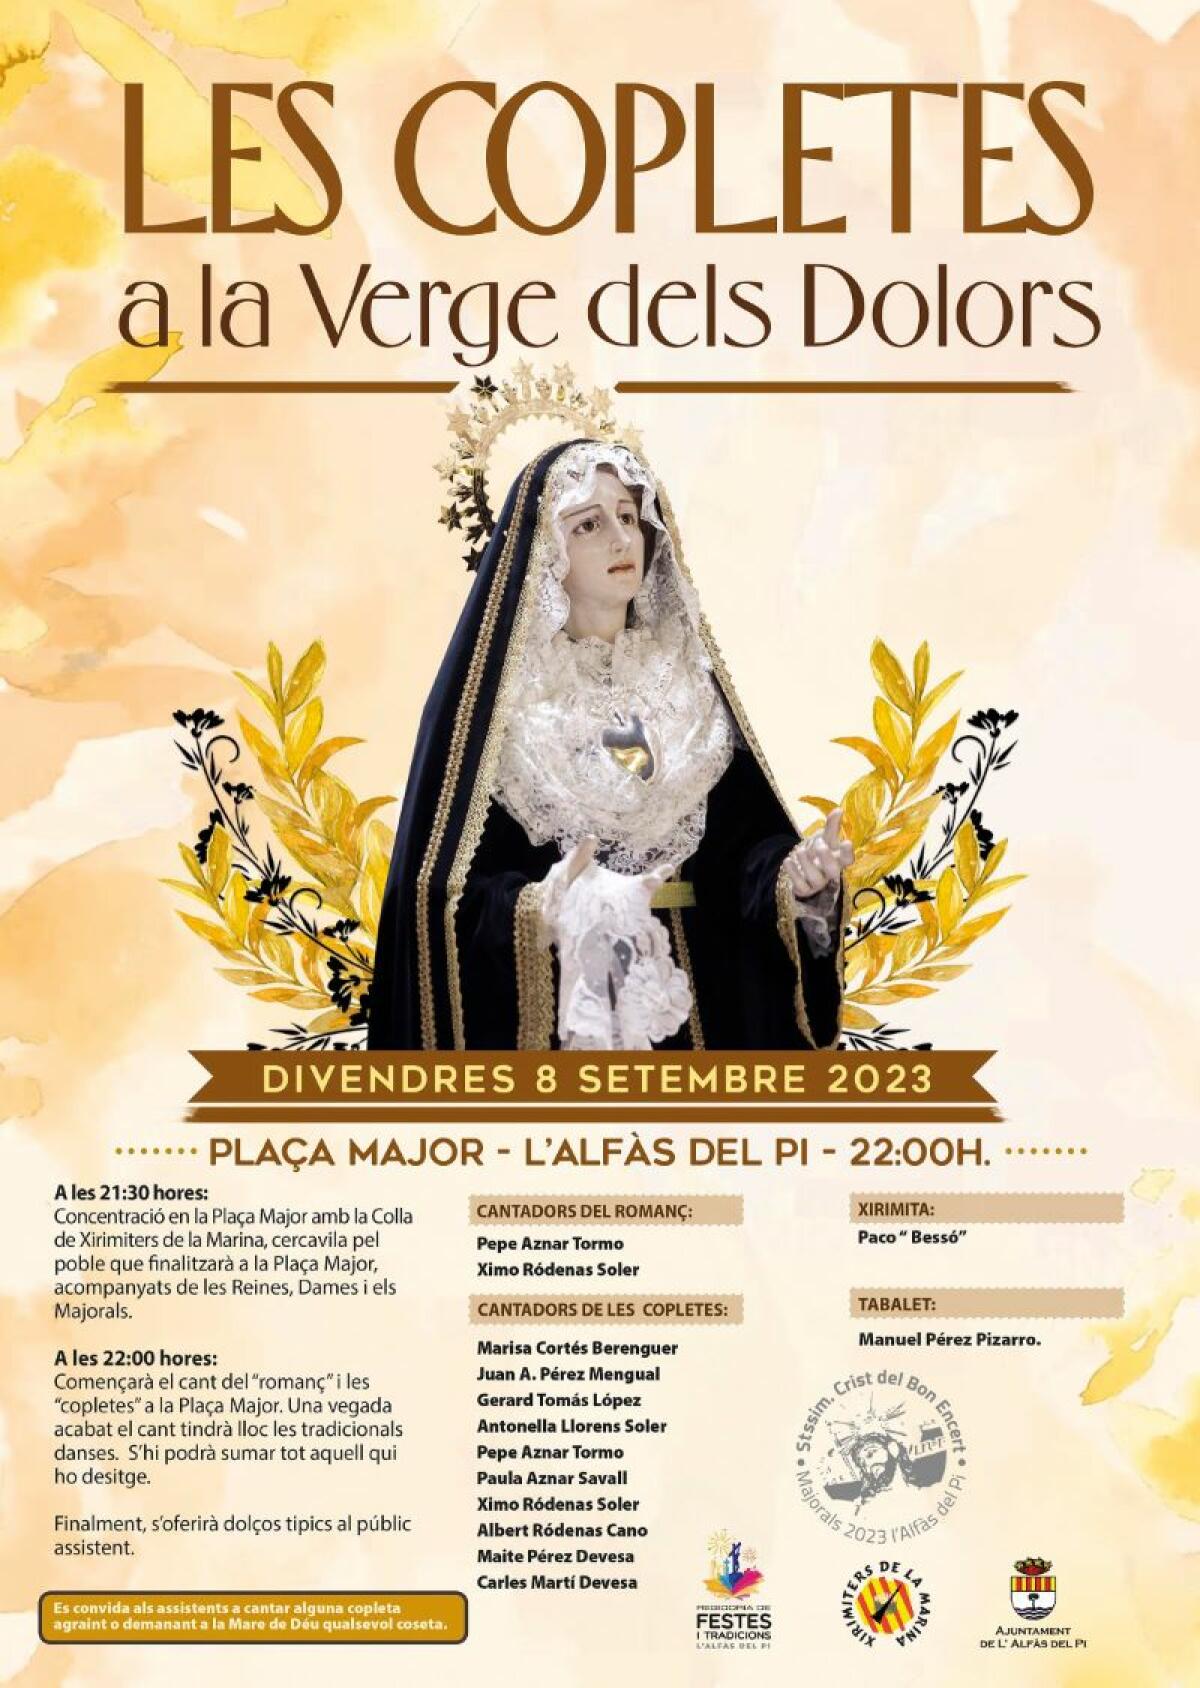 ‘Les Copletes a la Verge dels Dolors’ se cantarán el viernes 8 de septiembre en la plaza Mayor de l’Alfàs